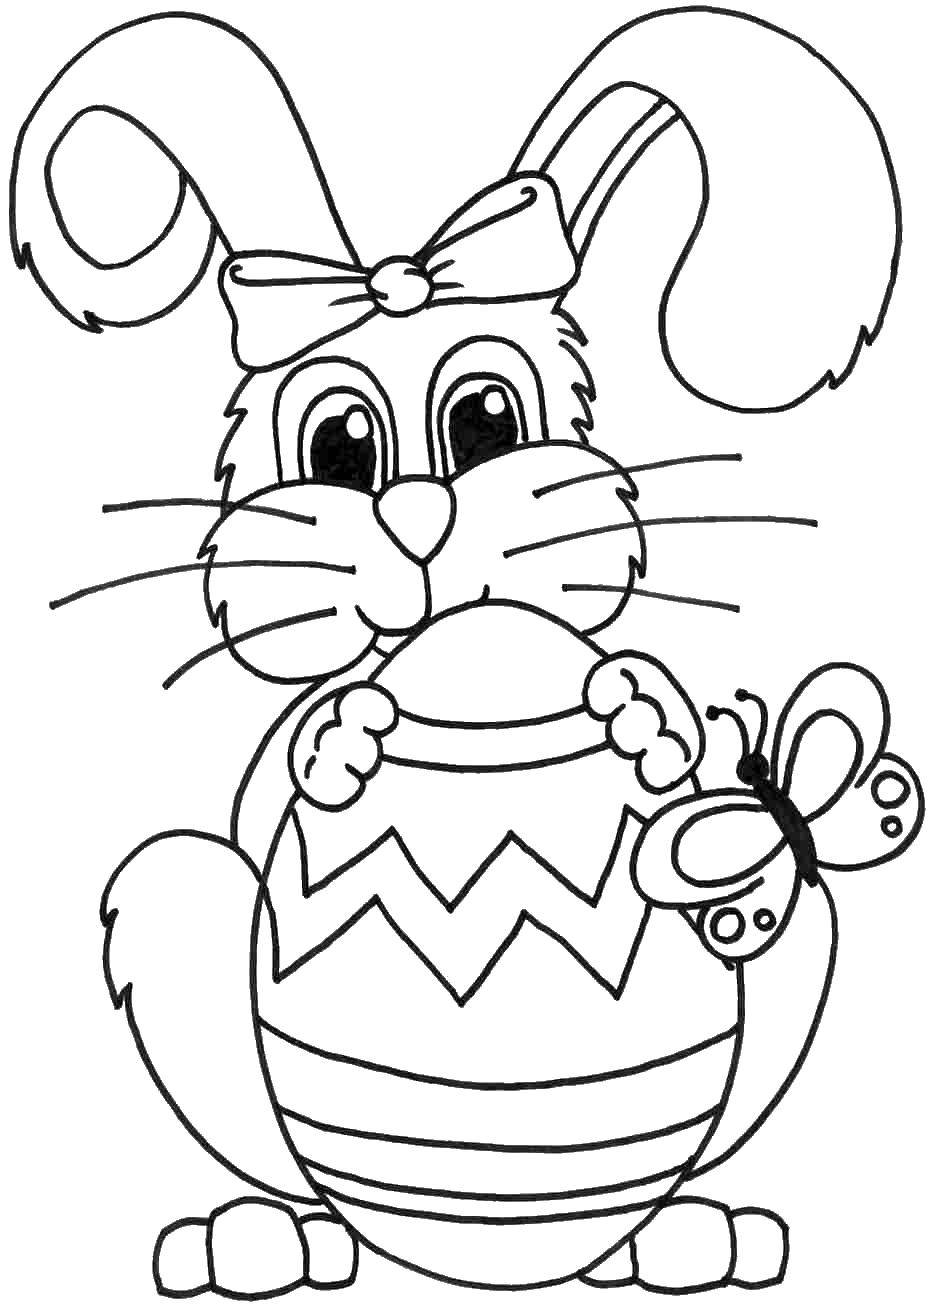 Раскраска кролика с яйцом для детей (кролик, яйцо)